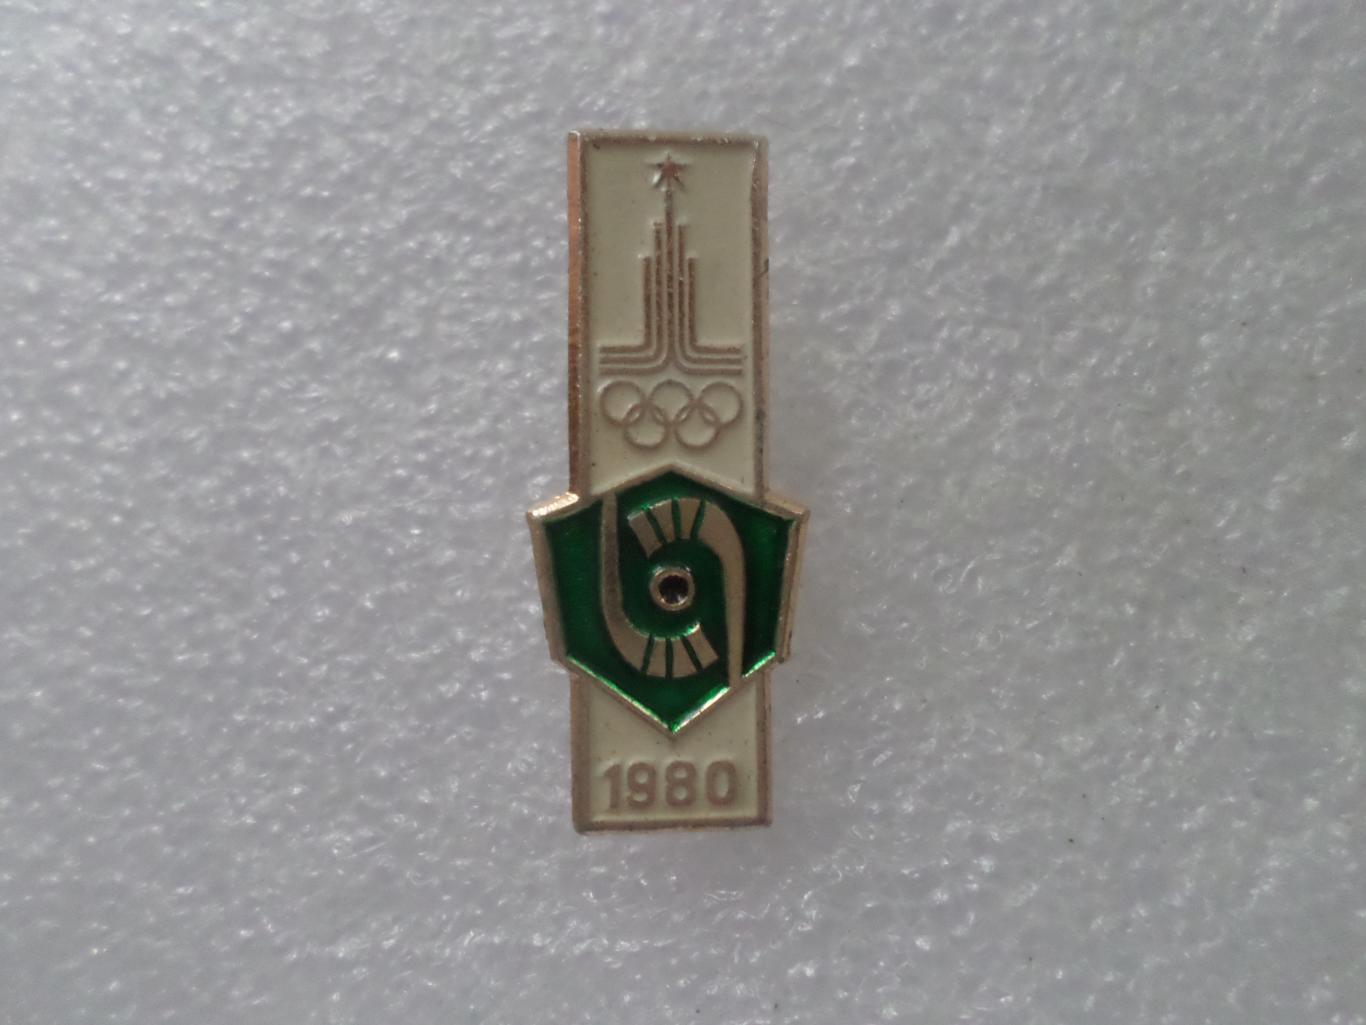 значок Олимпиада-80 Москва 1980 хоккей на траве